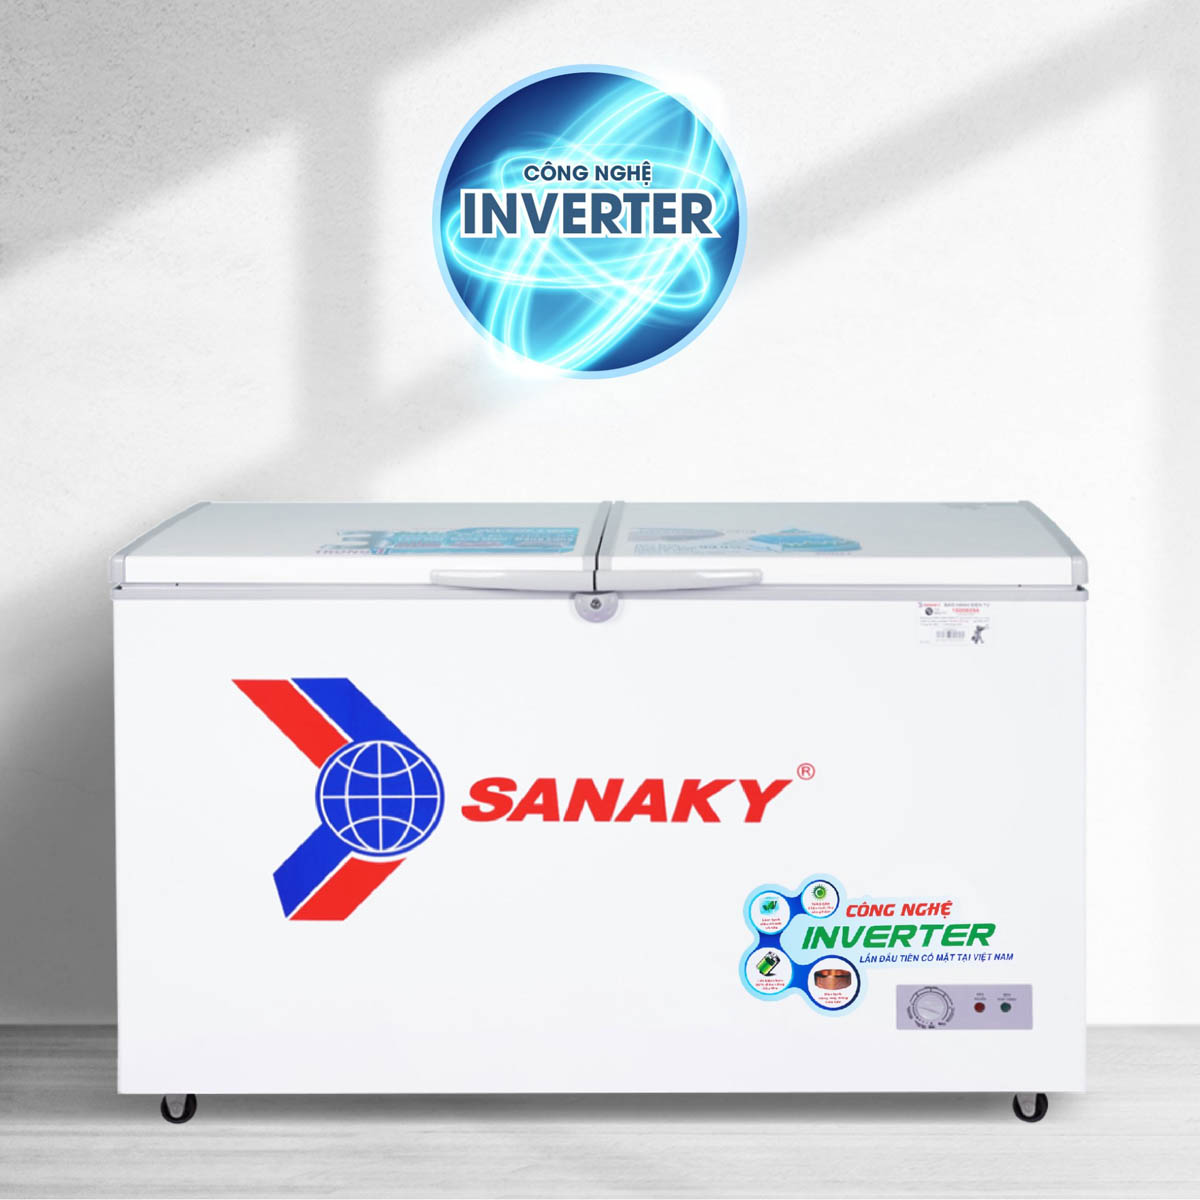 Tủ Đông Sanaky VH-2899A được tích hợp công nghệ Smart Inverter